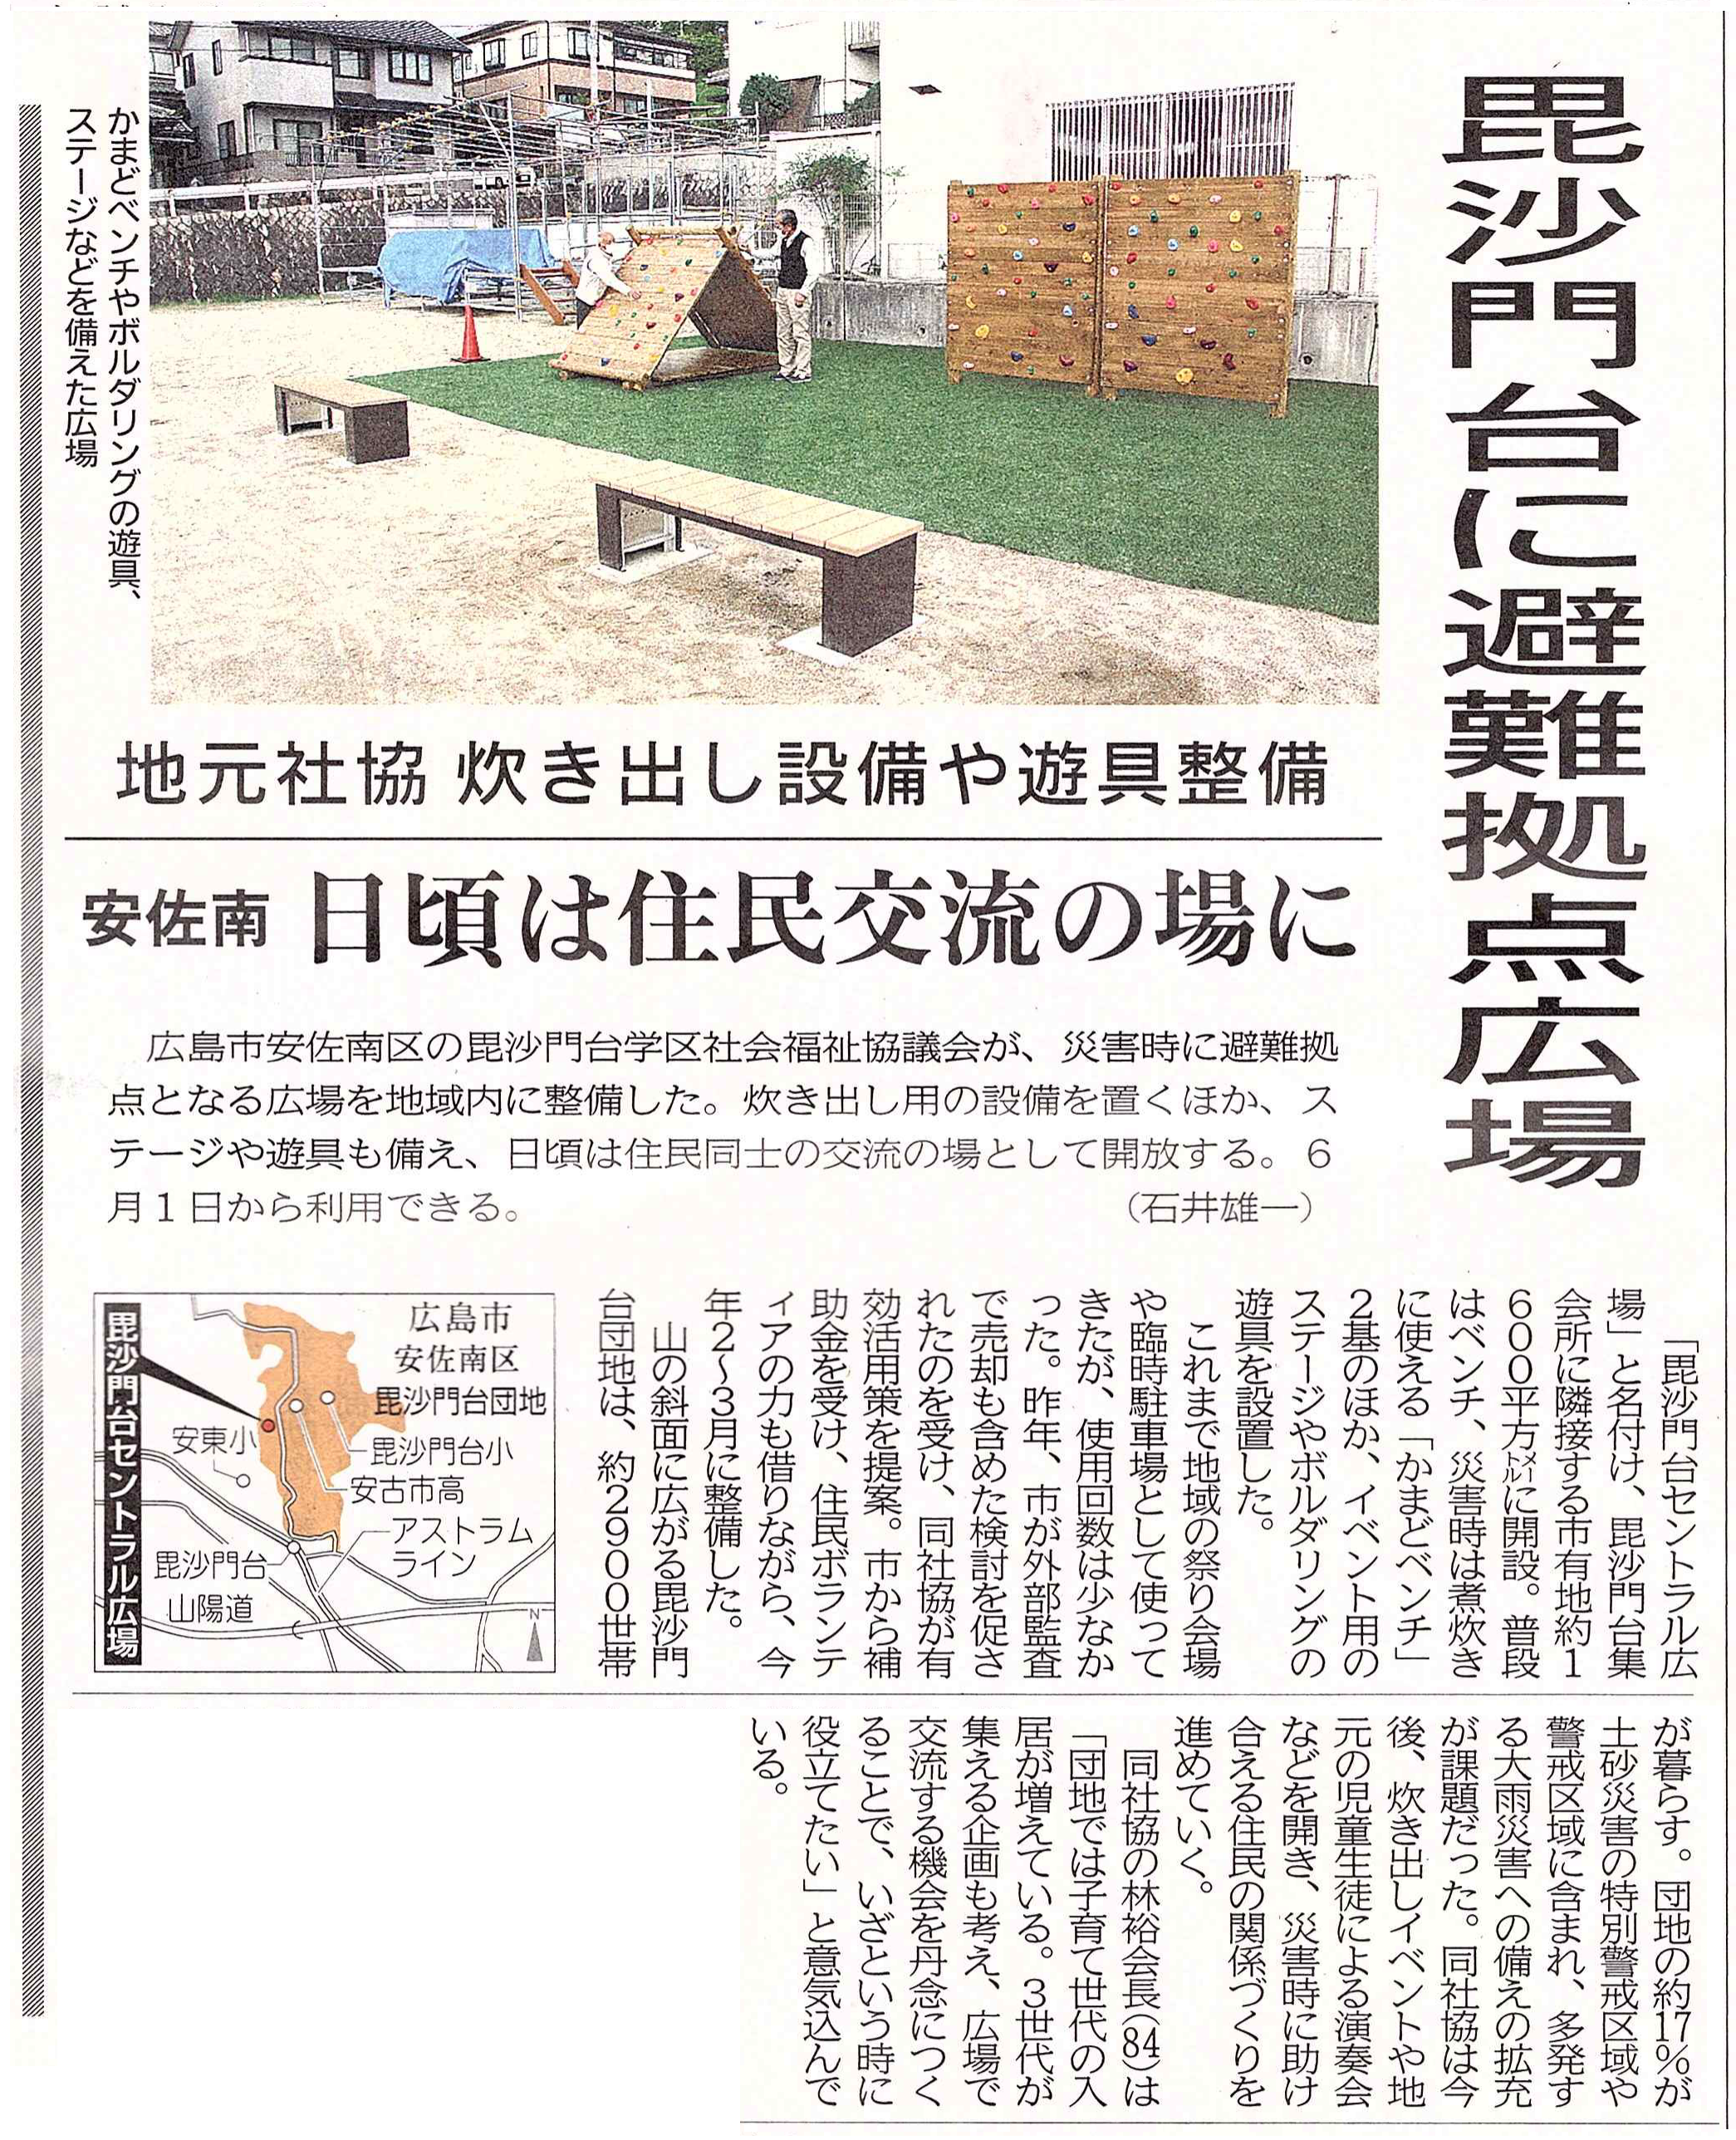 「毘沙門台セントラル広場」が5月30日付中国新聞朝刊で紹介されました。